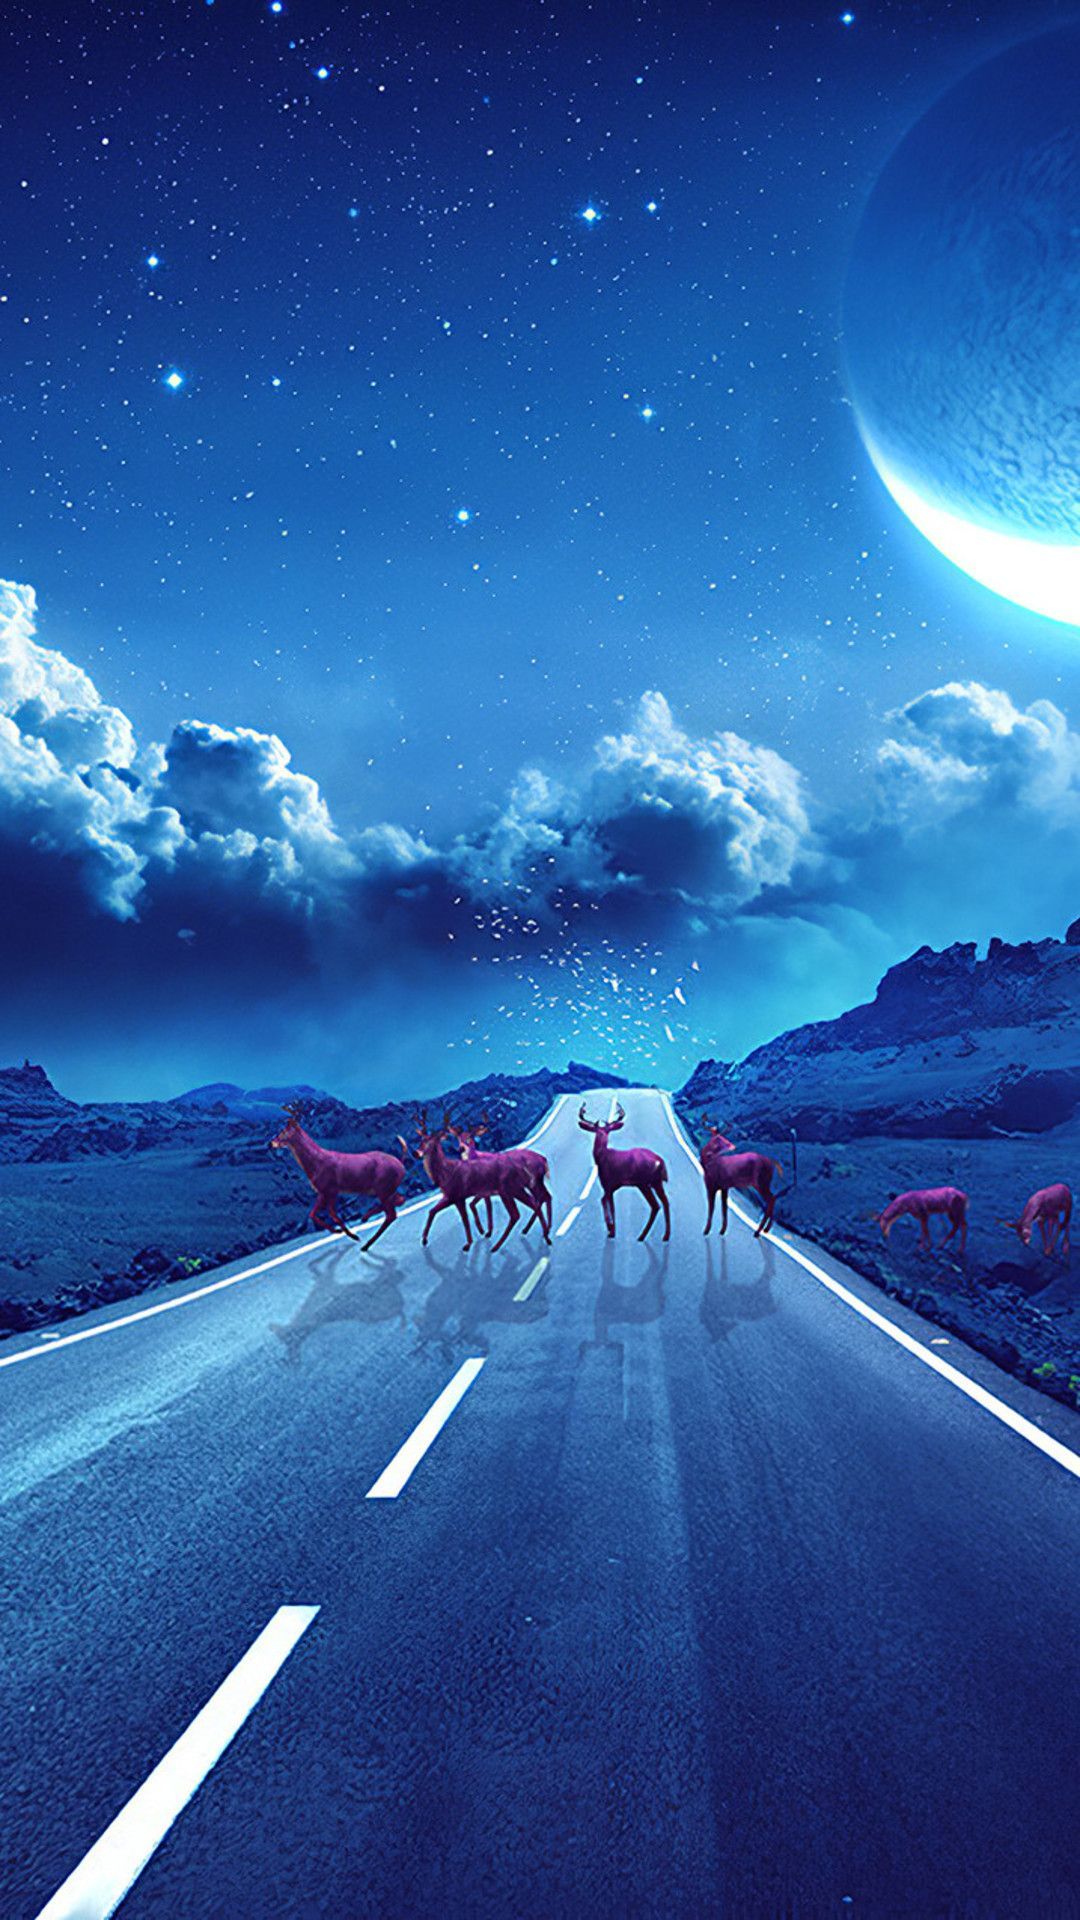 Deer Crossing The Road Magical Night Mobile Wallpaper iPhone